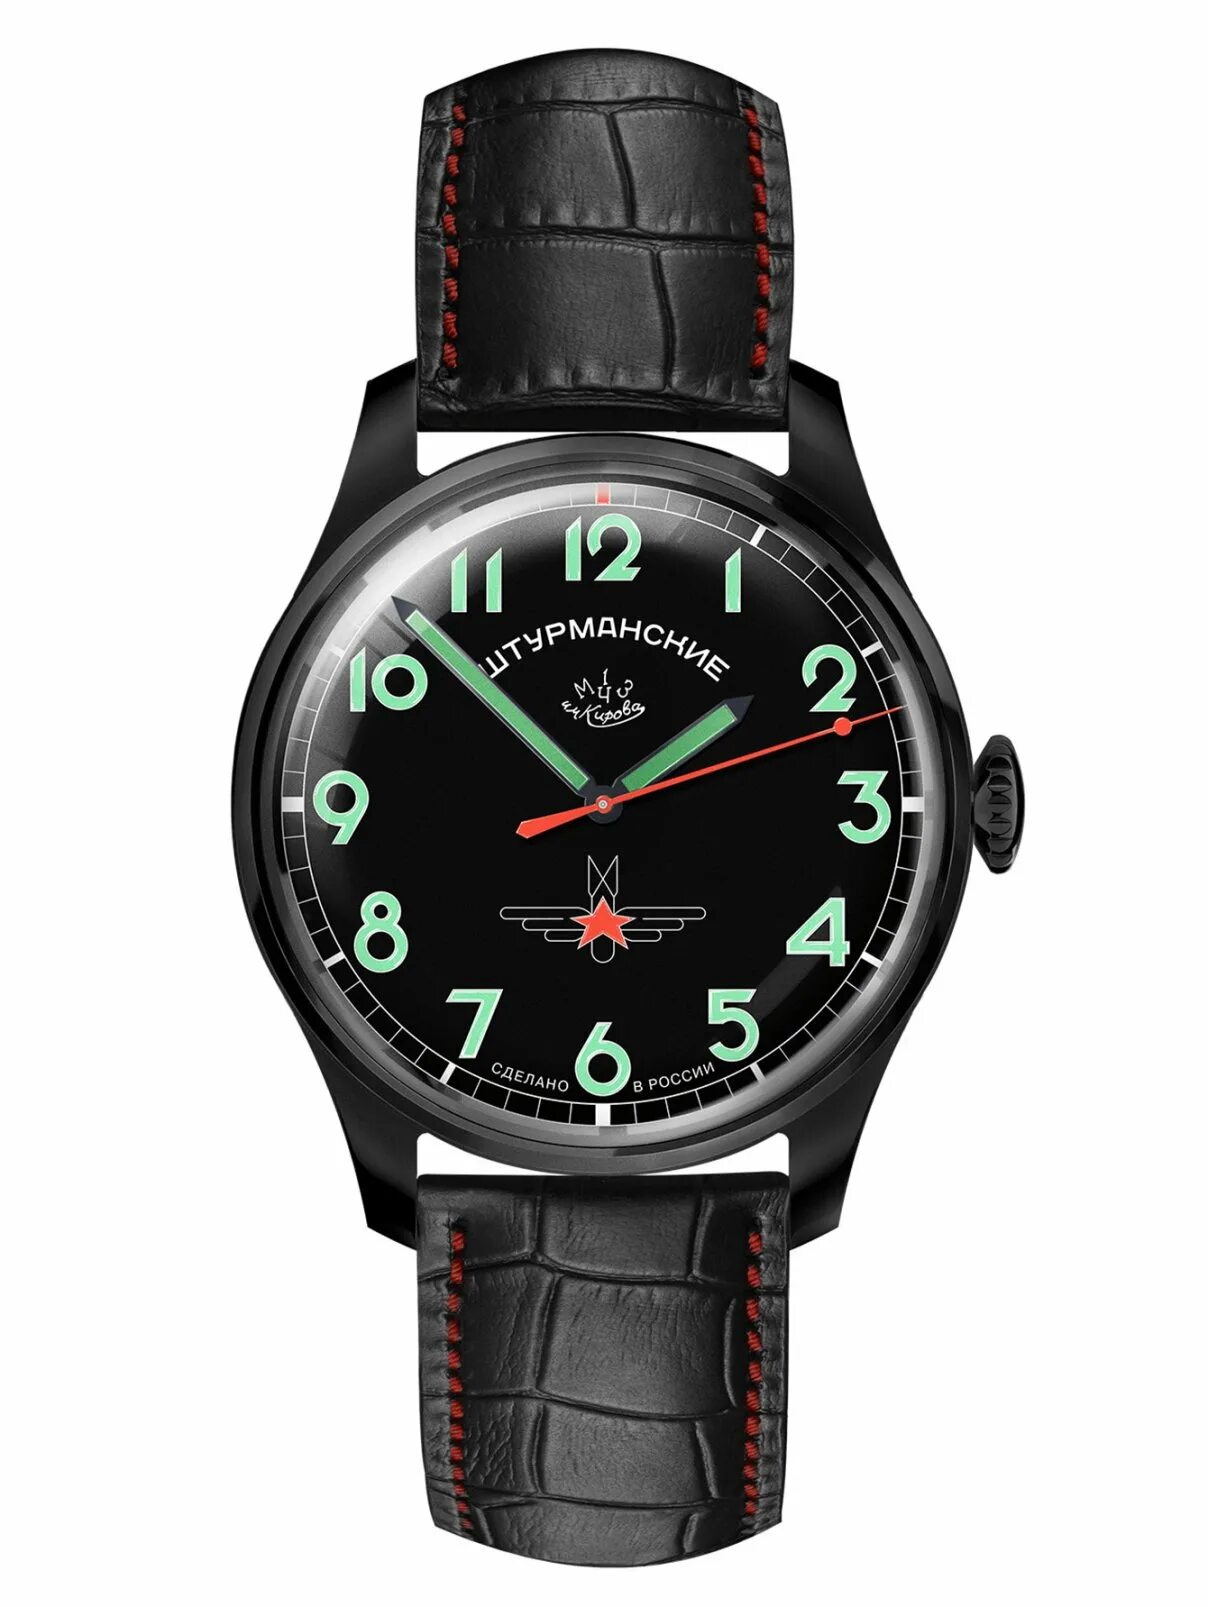 Sturmanskie часы Gagarin. Наручные часы Штурманские 3714130. Часы Штурманские nh36-1891772b. Часы Штурманские 2609/3751484 Гагарин.